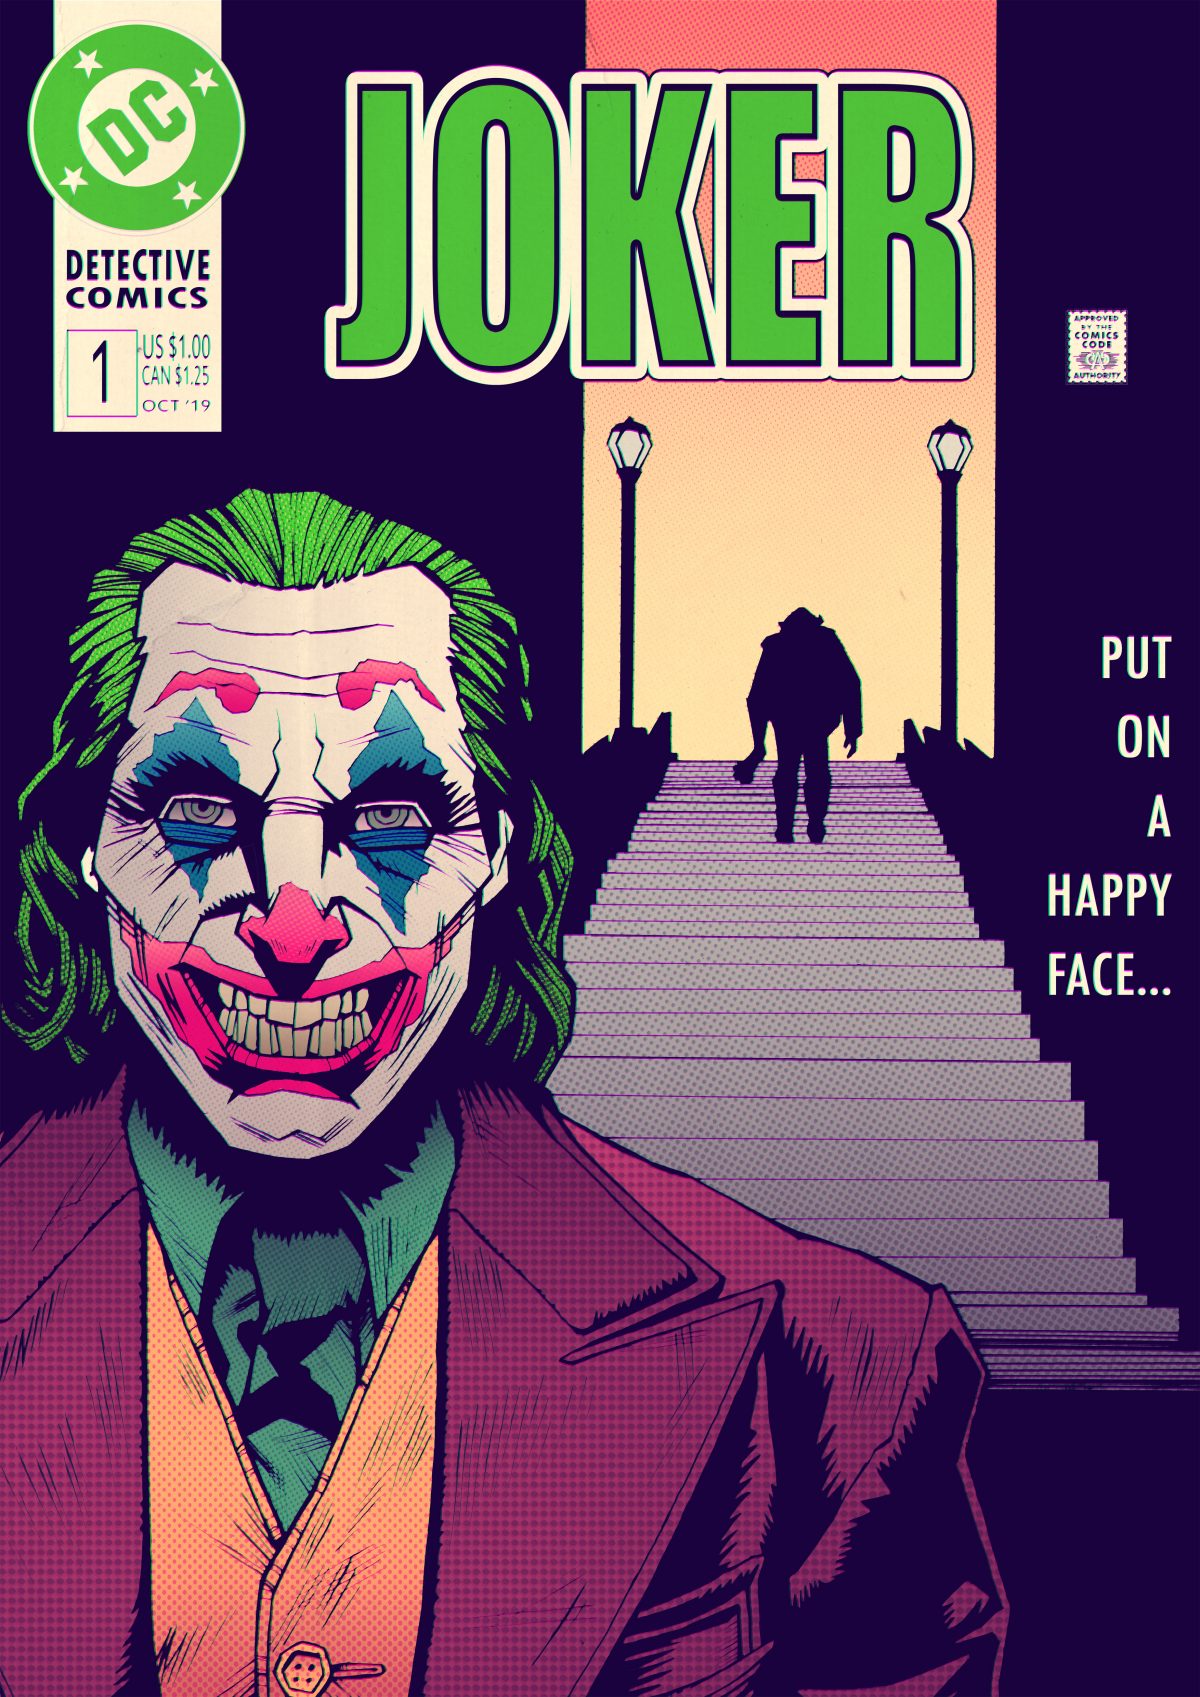 Joker - PosterSpy